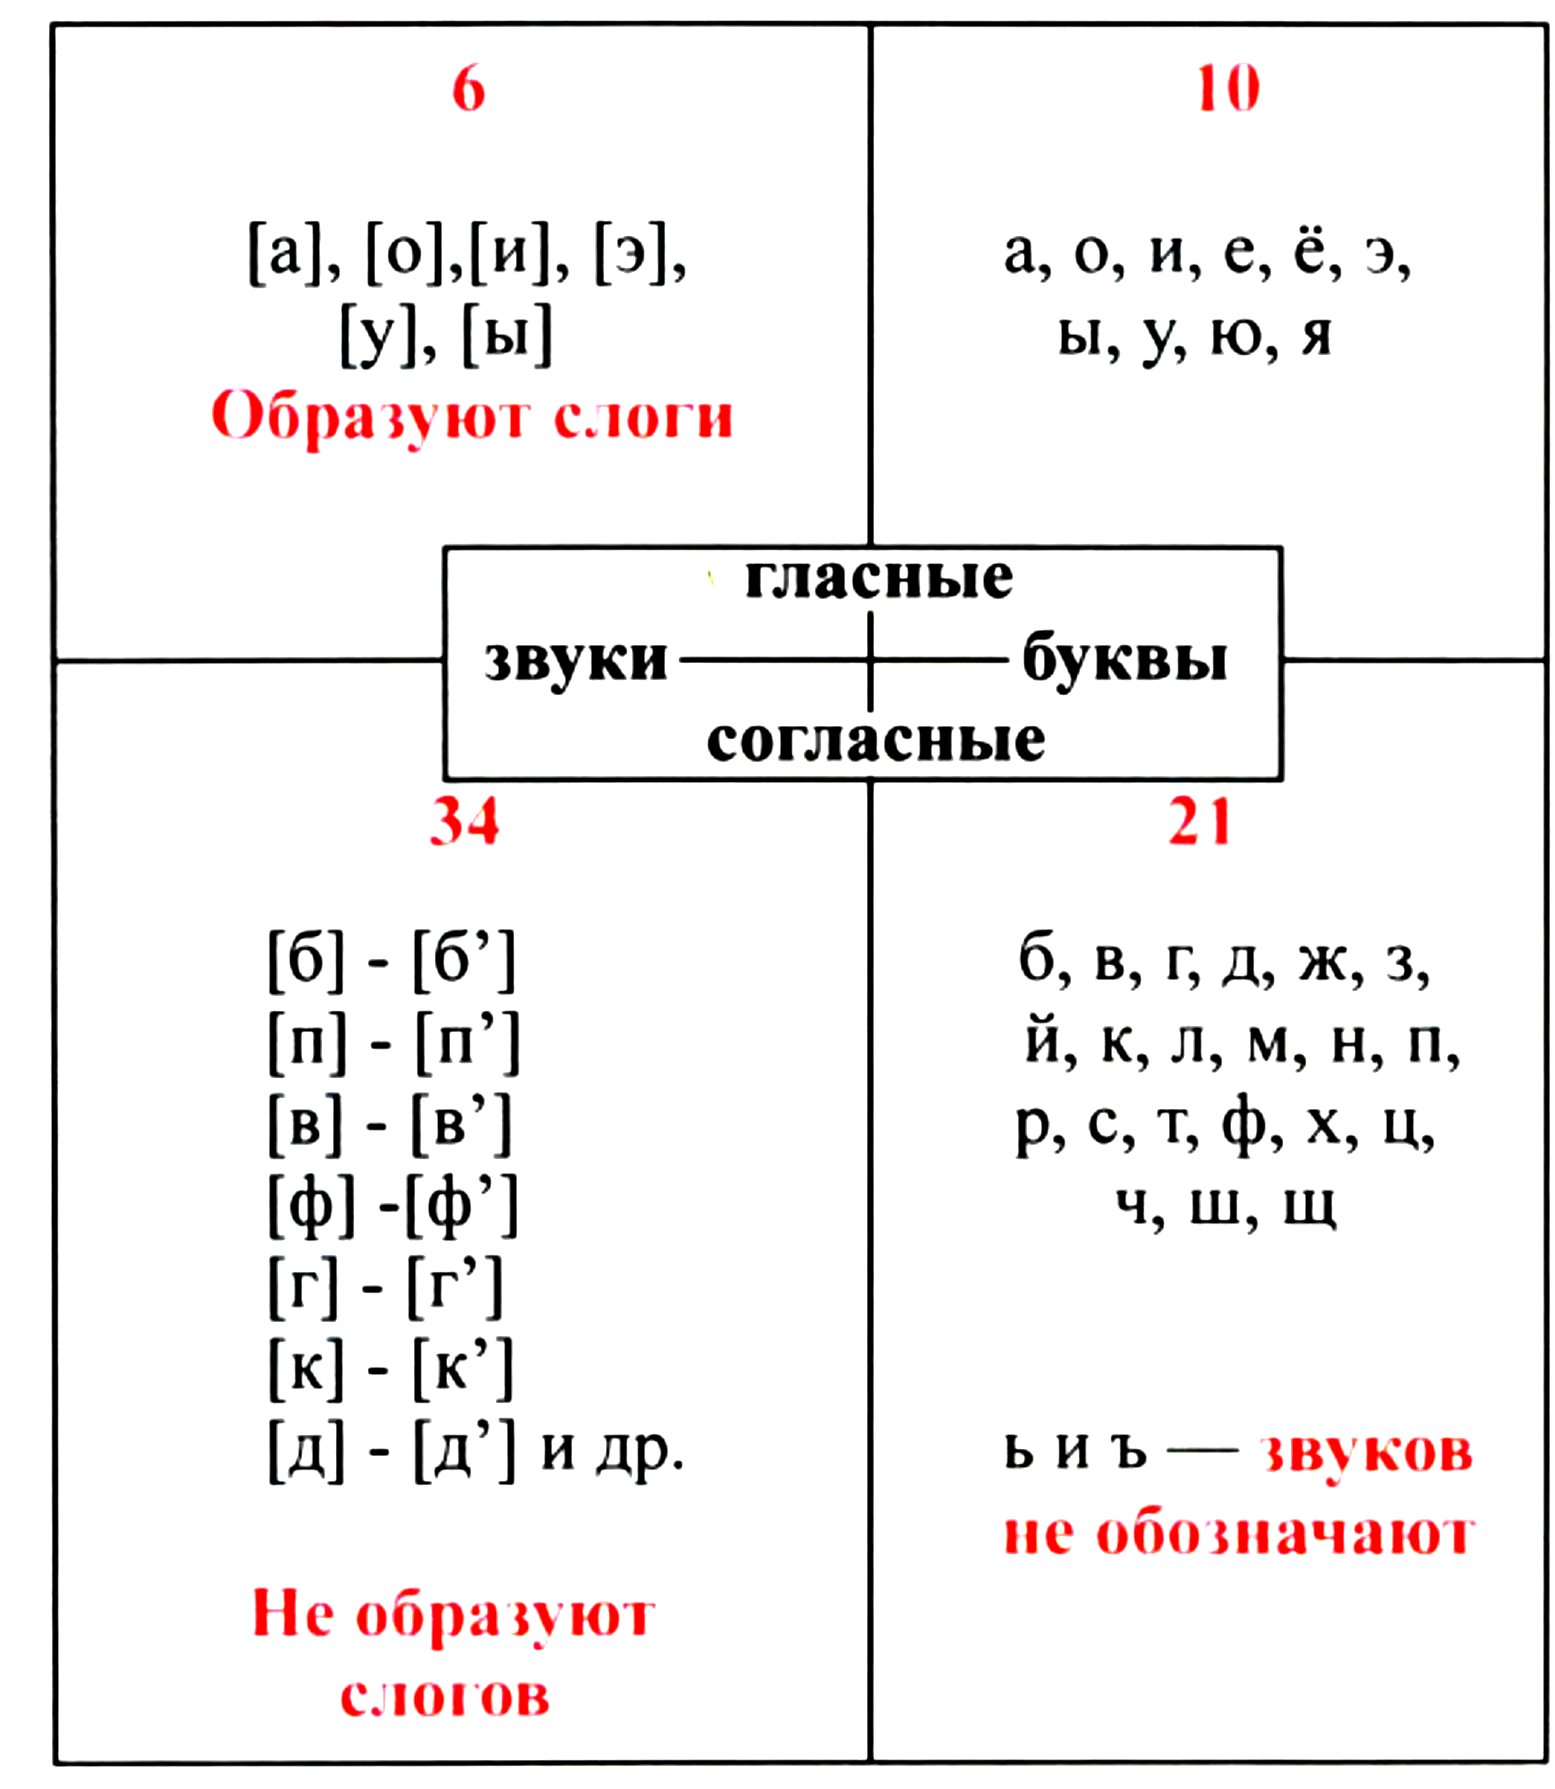 Таблица согласных и гласных букв русского языка